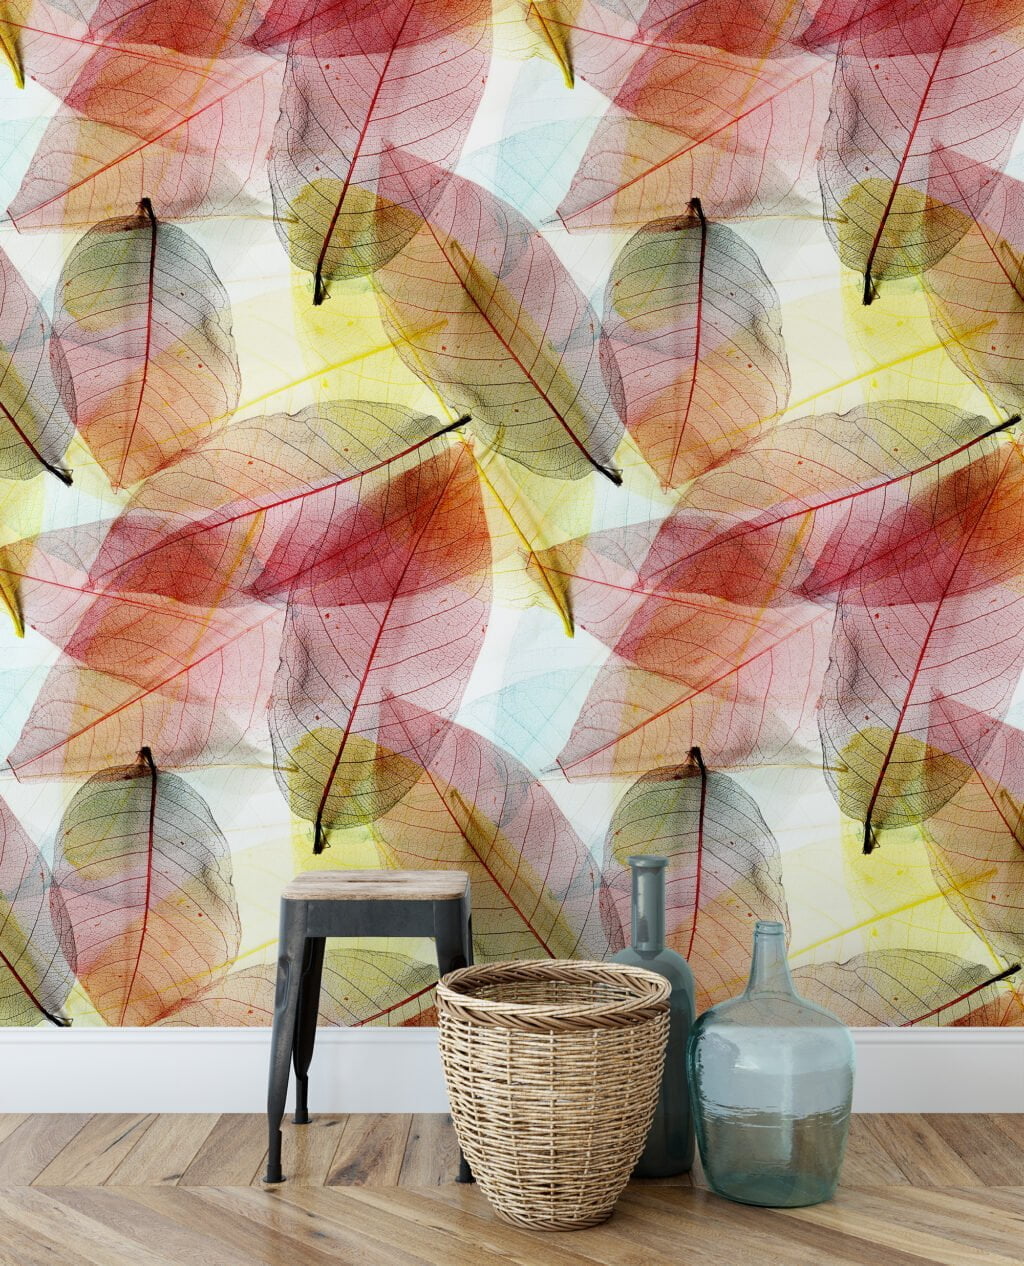 Büyük Renkli Yapraklar Duvar Kağıdı, Saydam Sonbahar Yapraklı 3D Duvar Posteri Yaprak Desenli Duvar Kağıtları 5